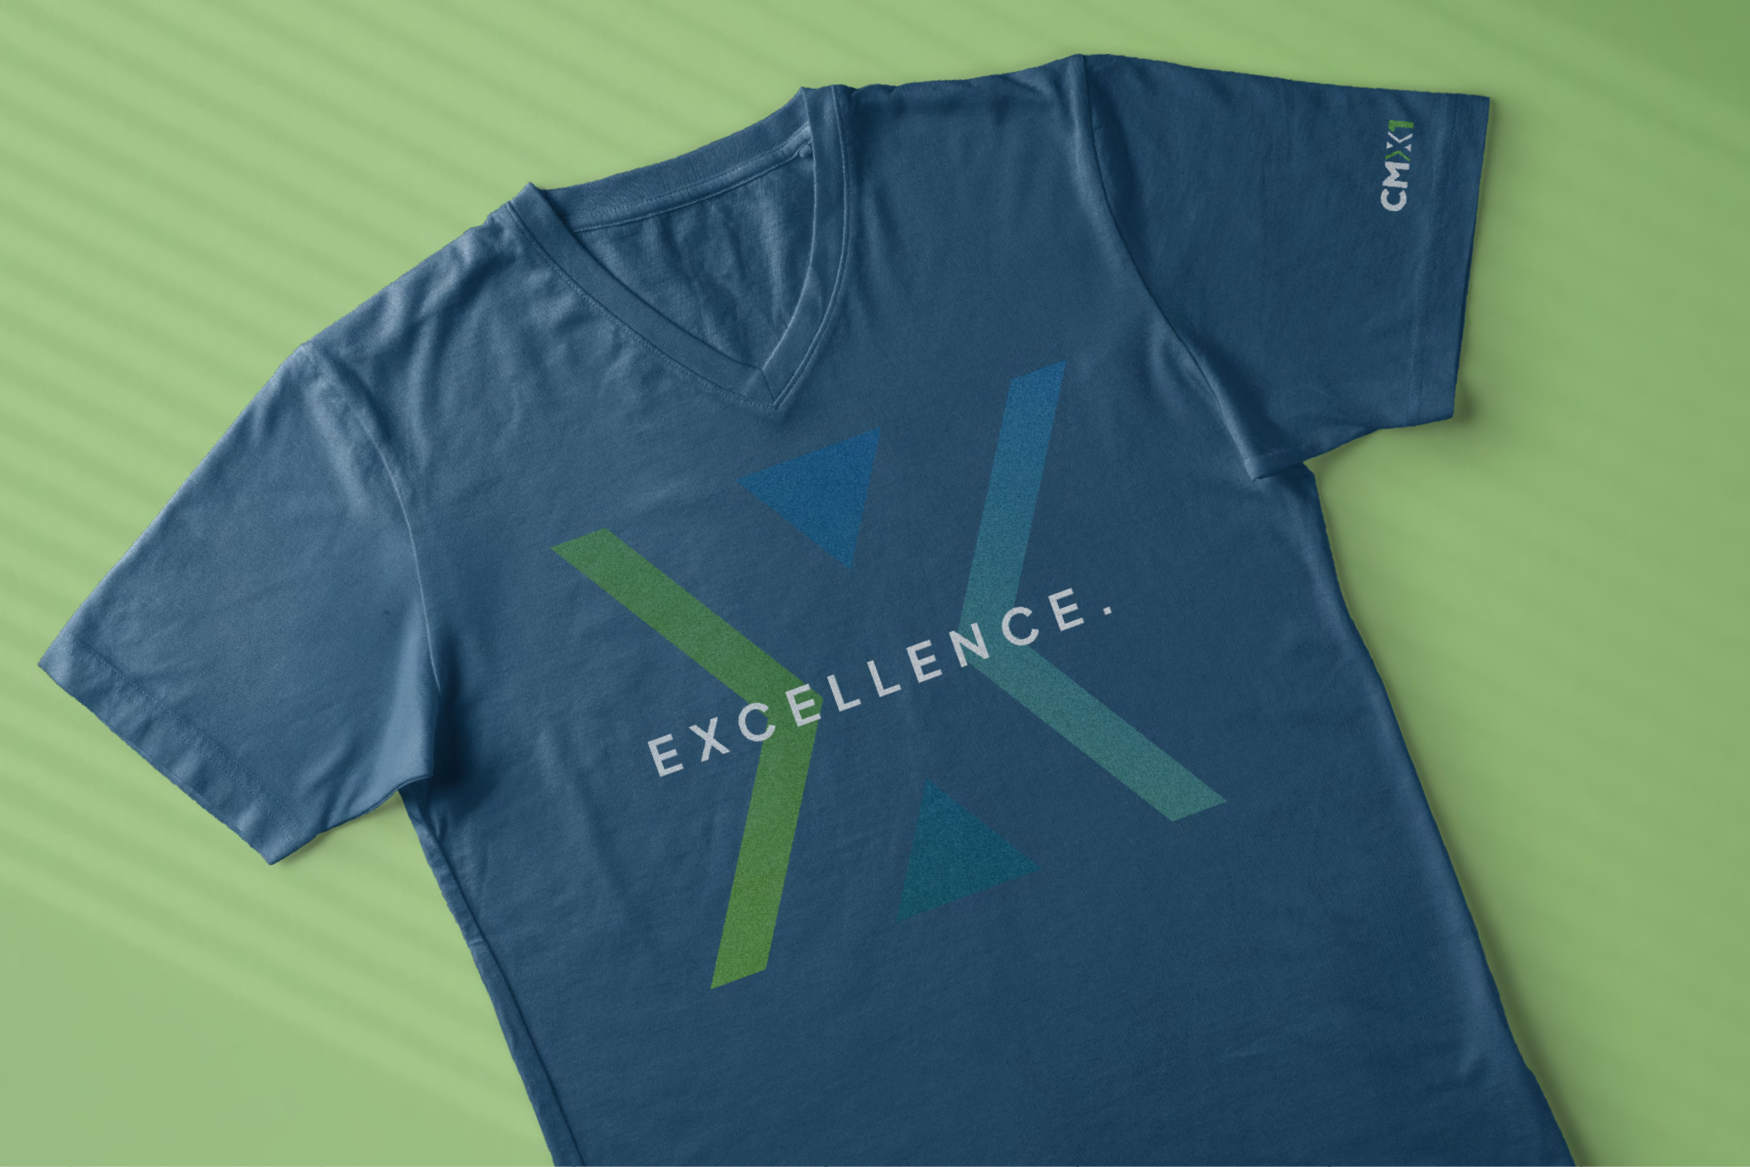 CMX1 "excellence" t-shirt